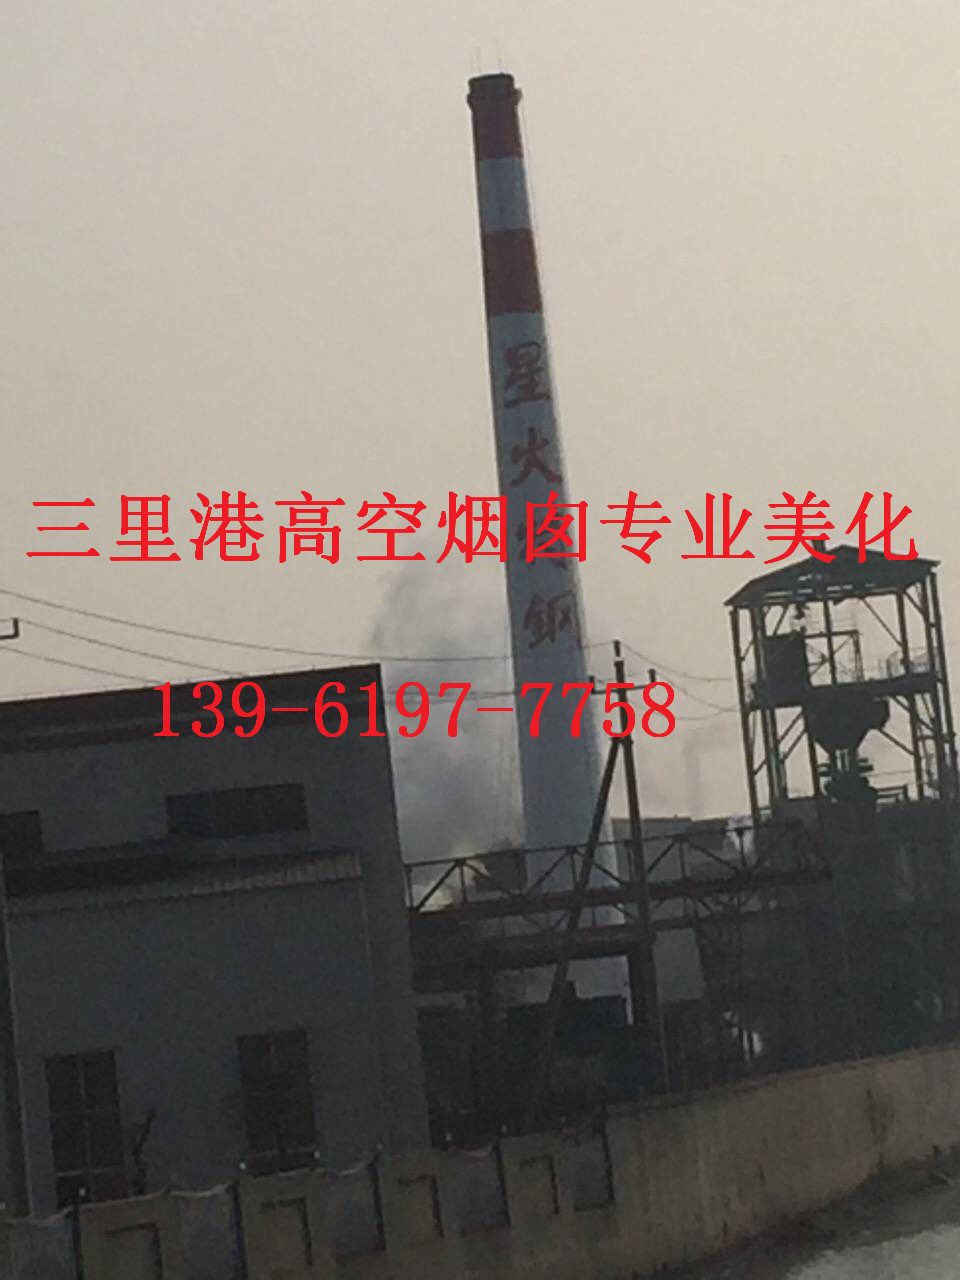 安庆市烟囱刷航标工程工程报价低